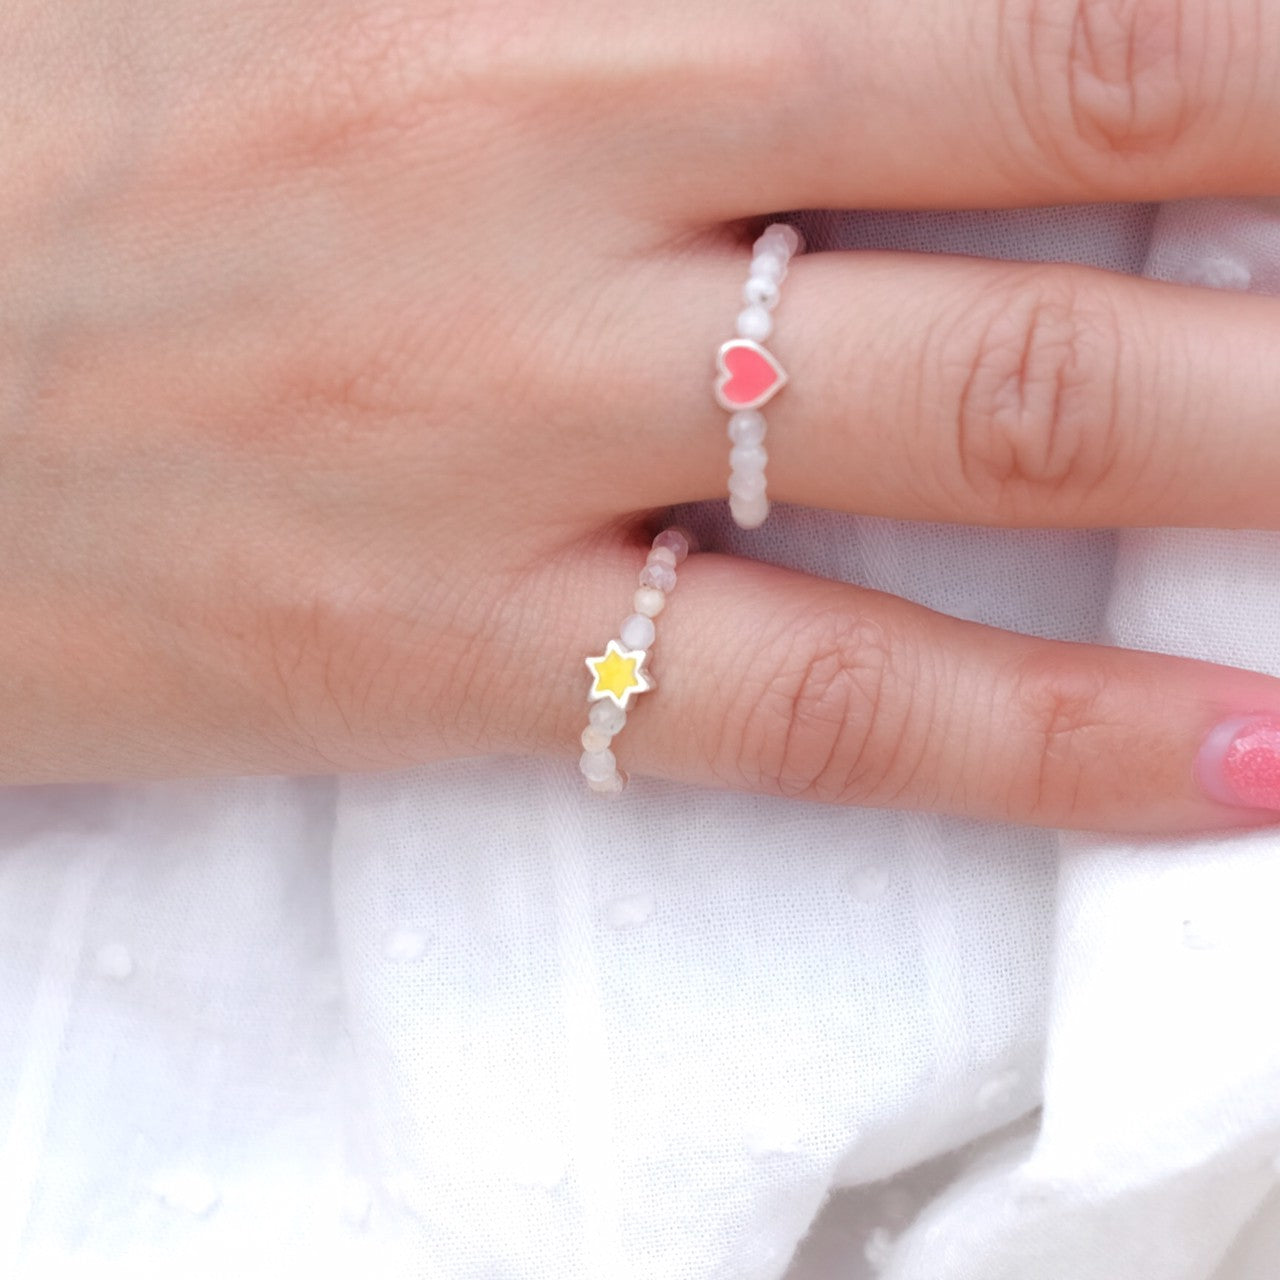 แหวนหินแท้ Moomin Heart